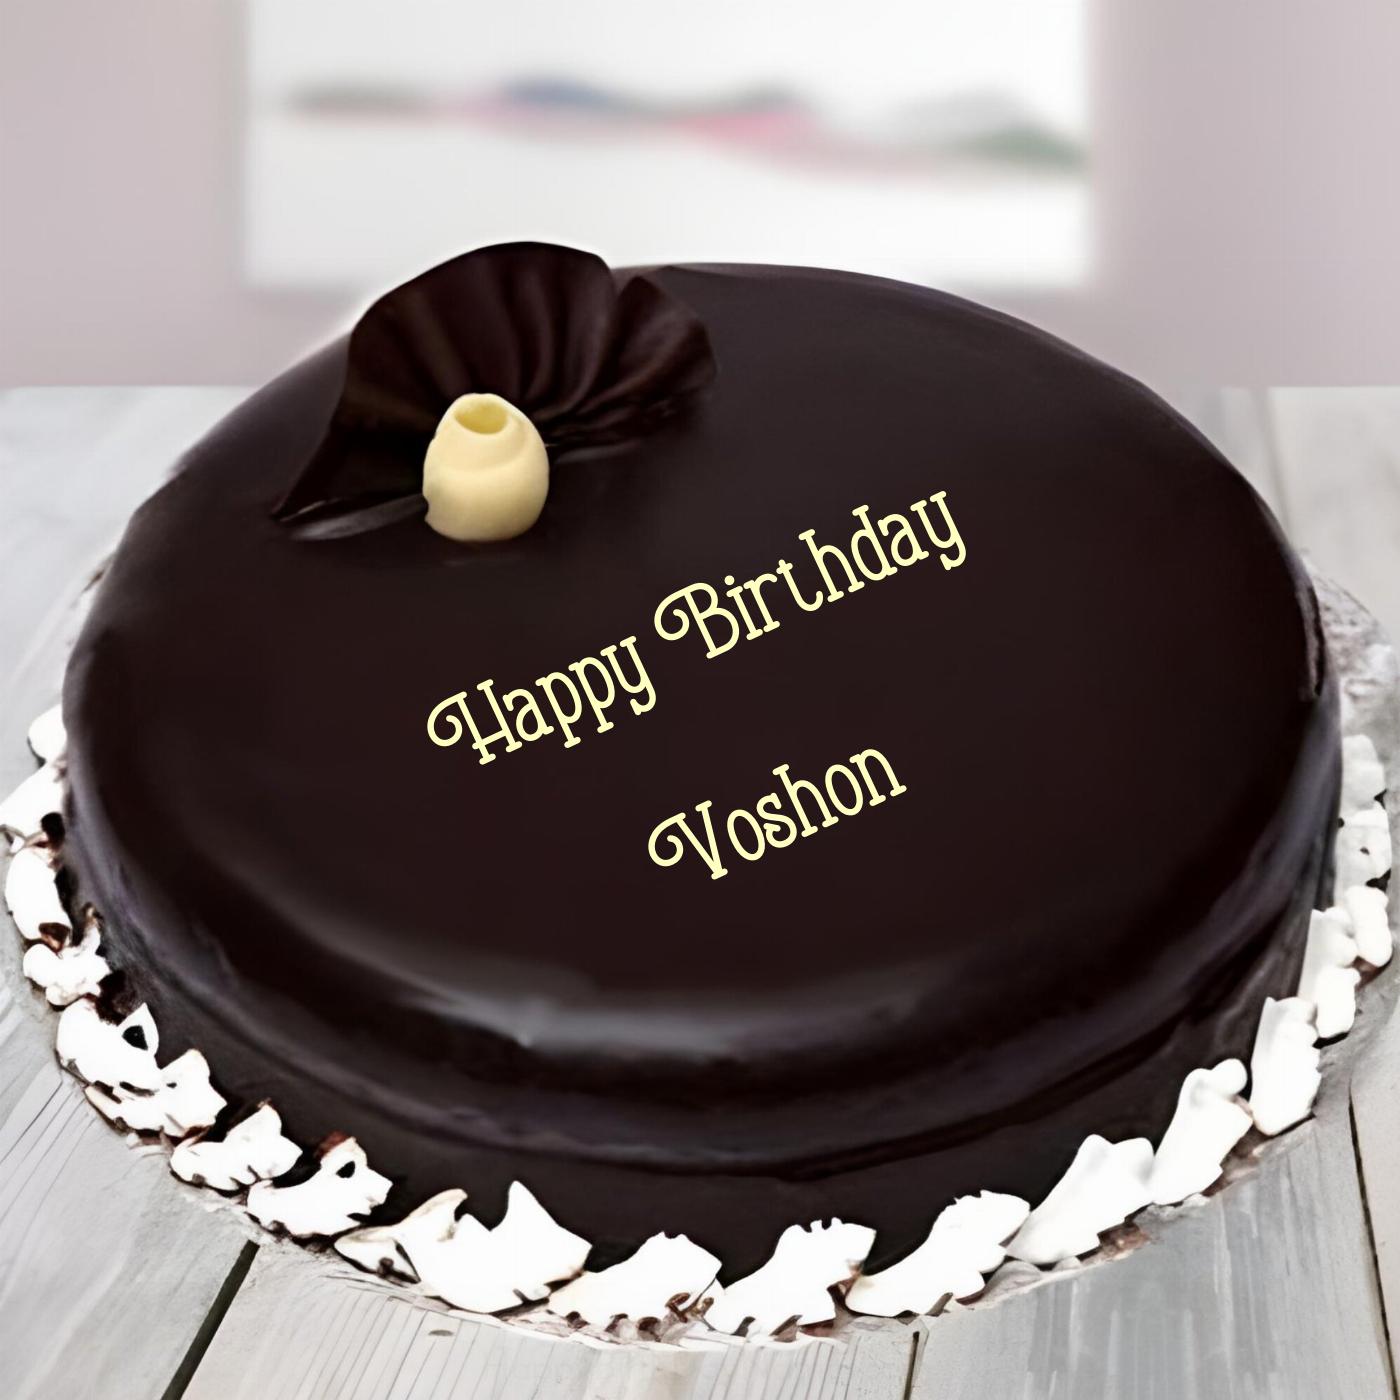 Happy Birthday Voshon Beautiful Chocolate Cake